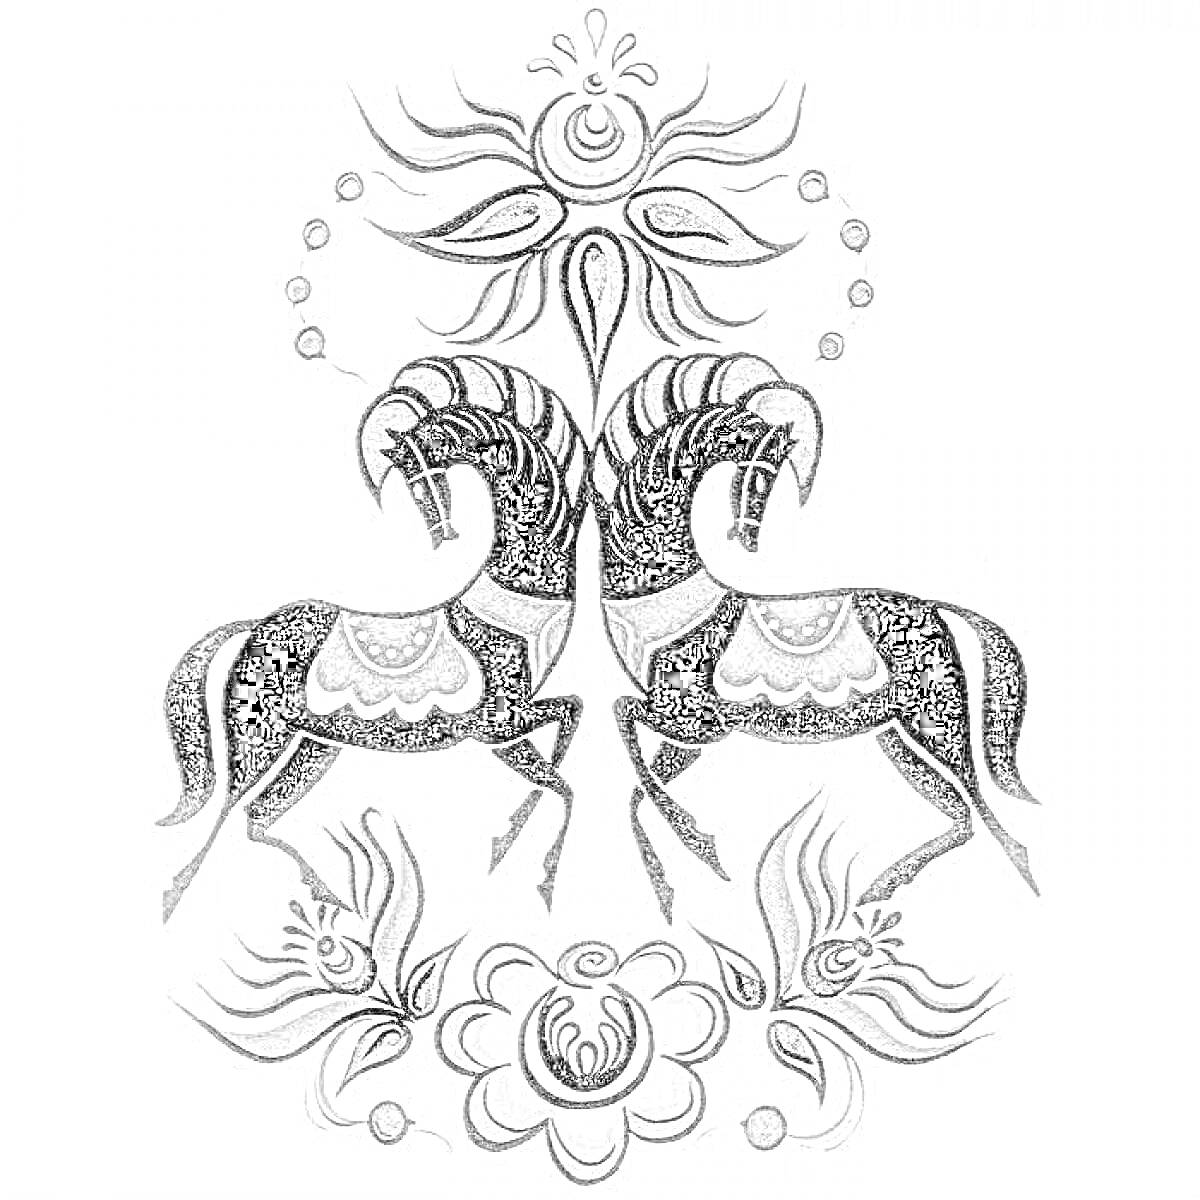 Раскраска Городецкая роспись - два коня, цветок, круги, листья